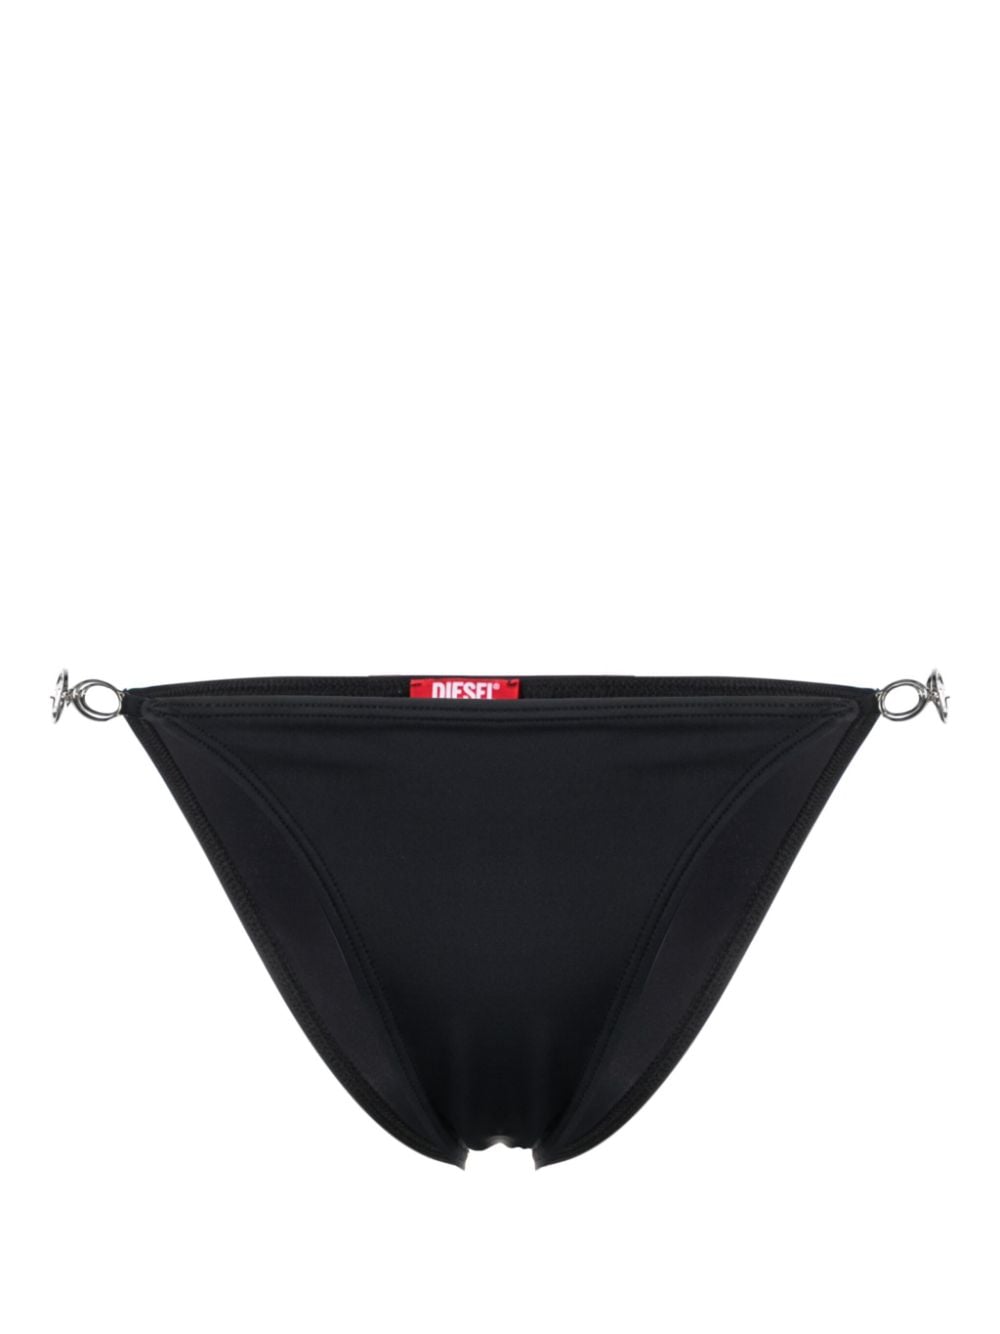 Diesel BFPN-Irina logo-plaque bikini bottoms - Black von Diesel